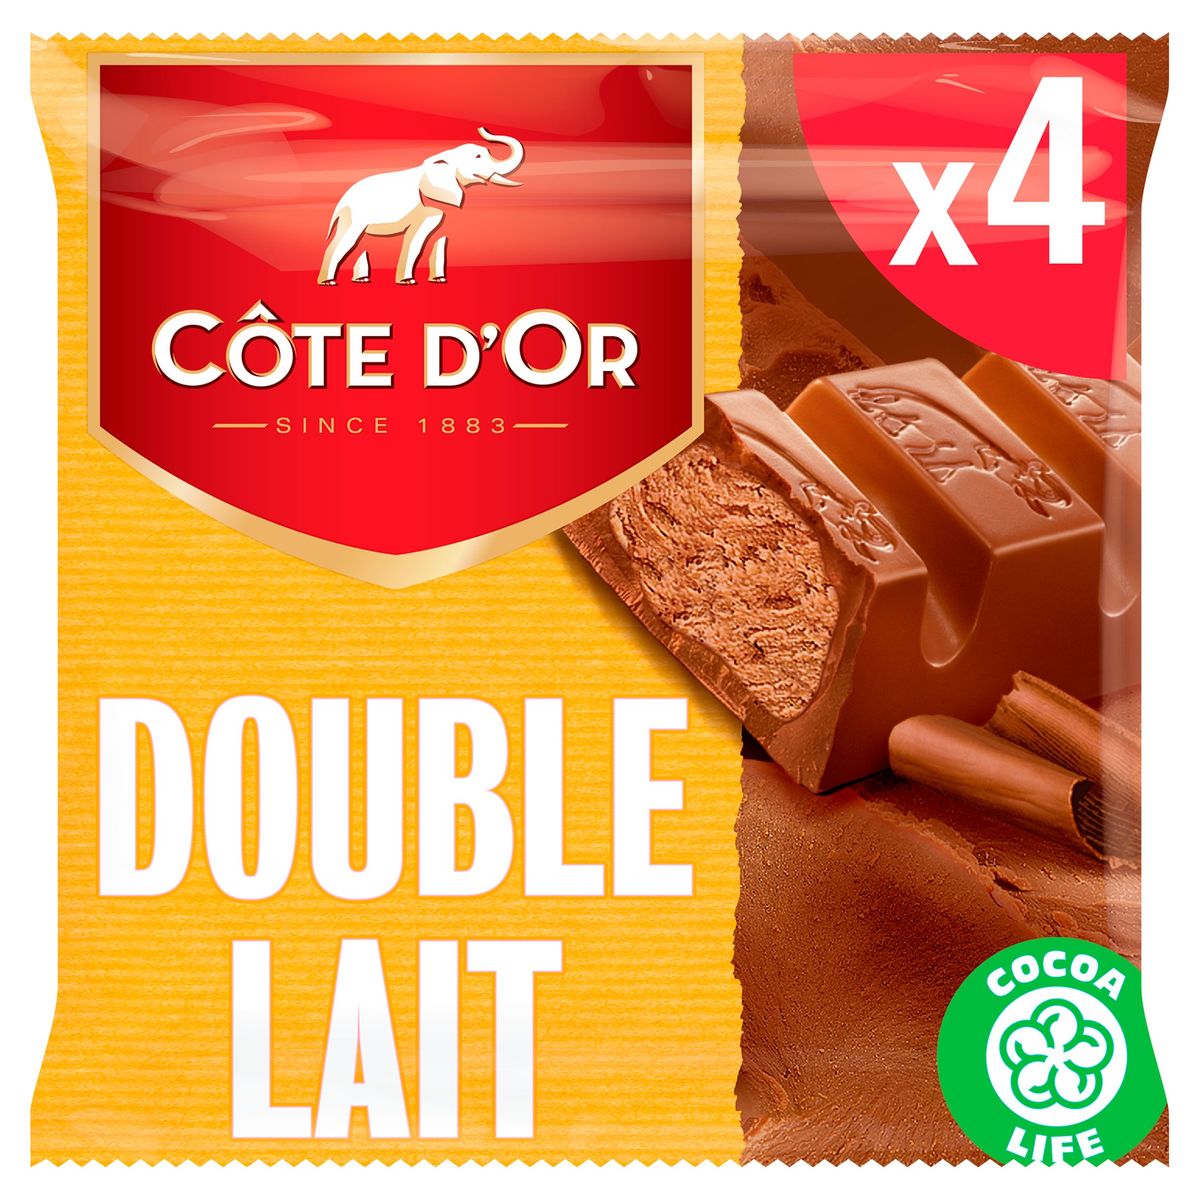 Côte d'Or Chocolade Repen Melkchocolade Double Lait 4 x 46 g